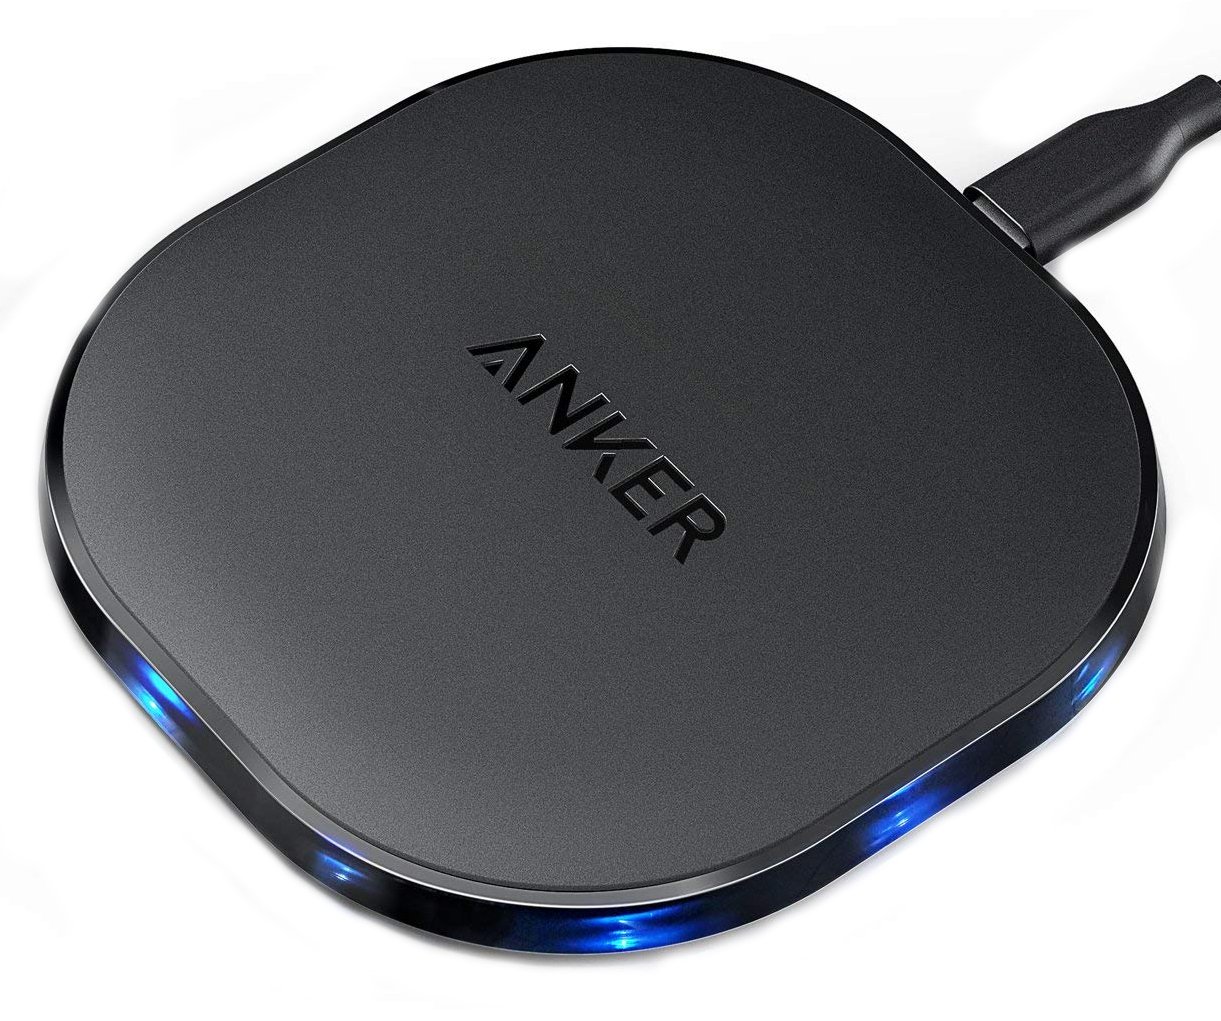 anker-10w-wireless-charging-pad-press.jpg